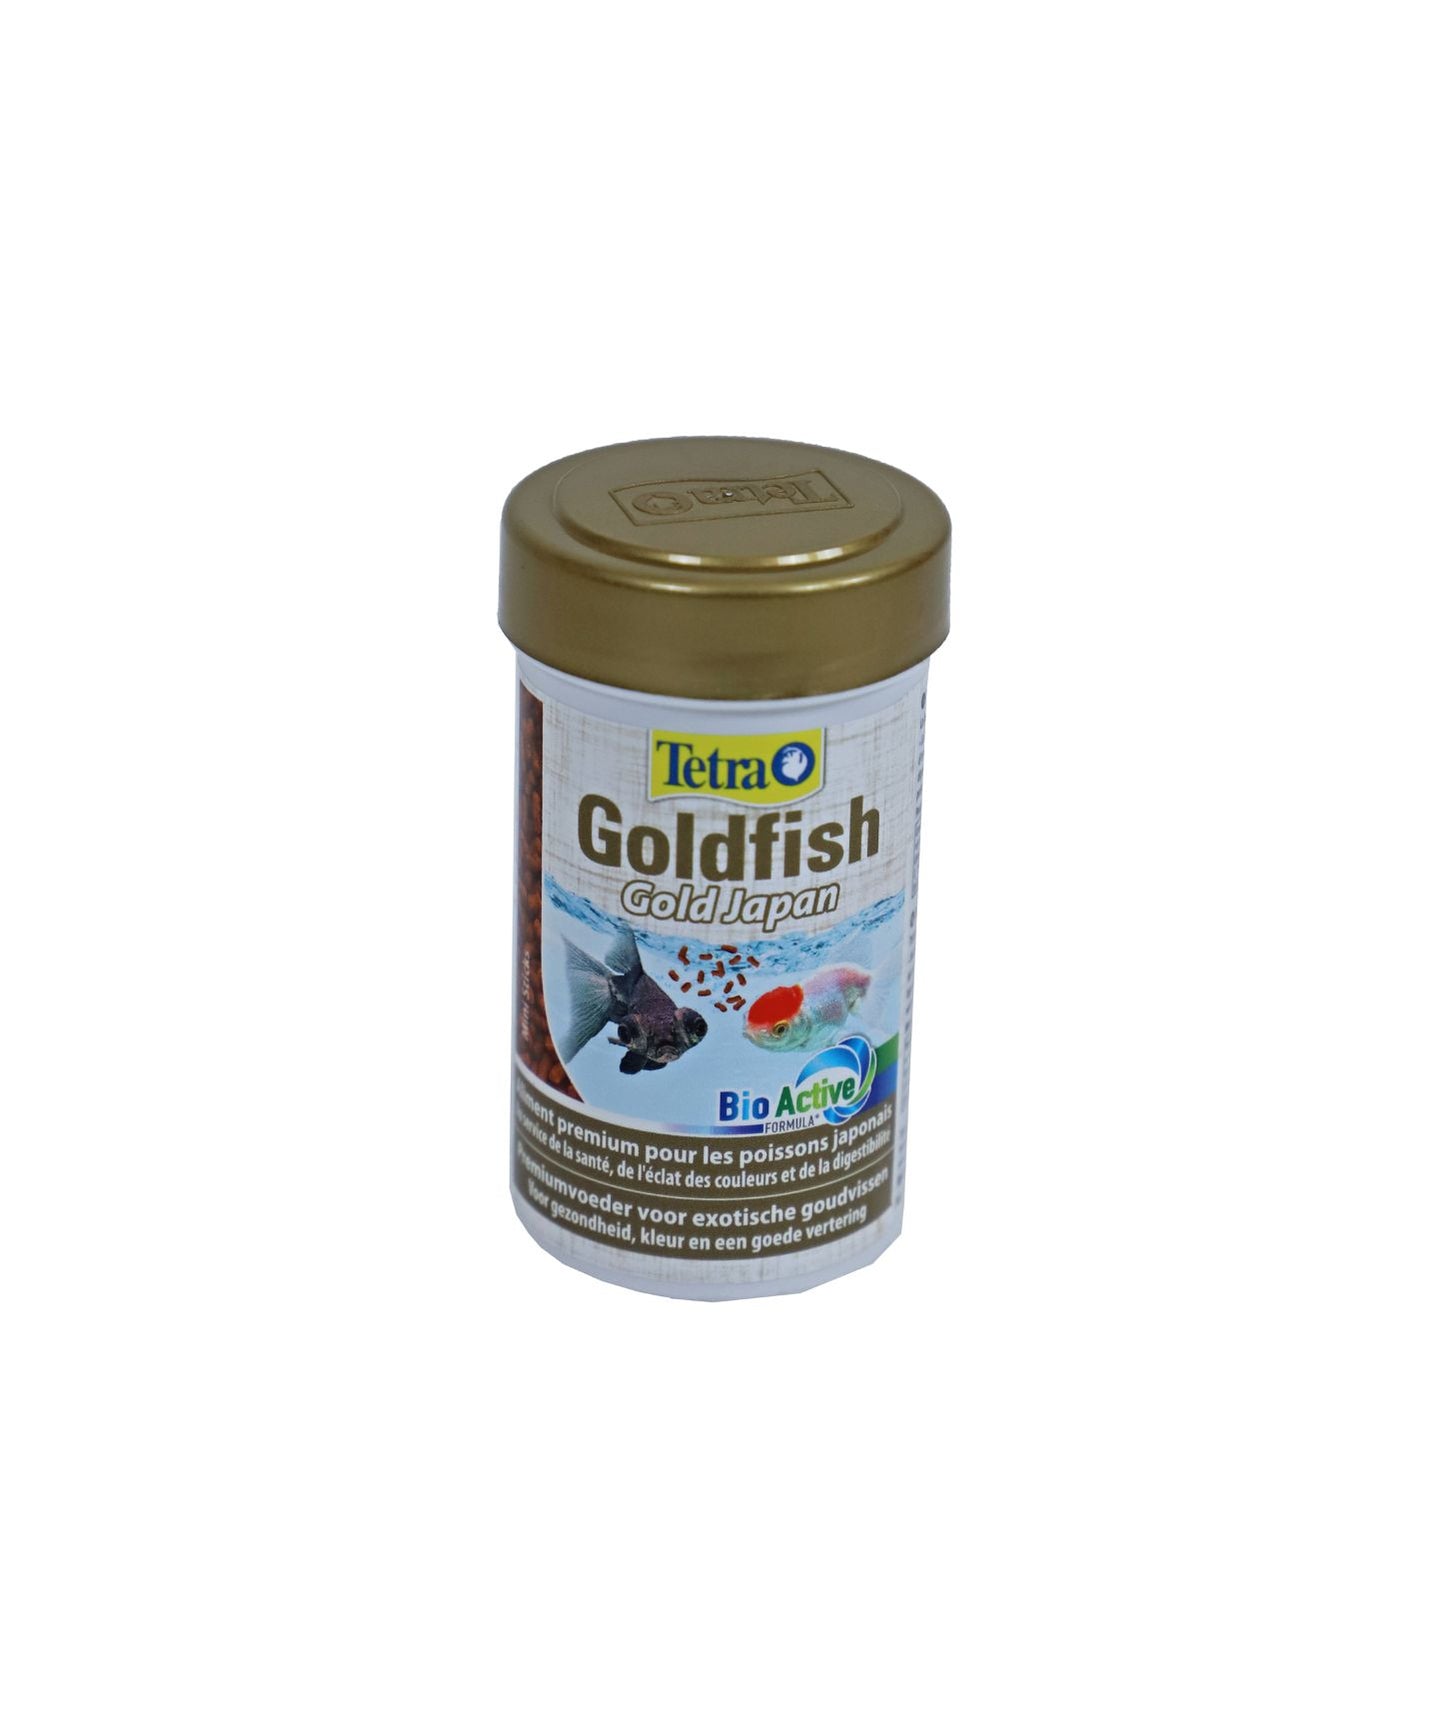 Tetra Goldfish Gold Japan mini sticks